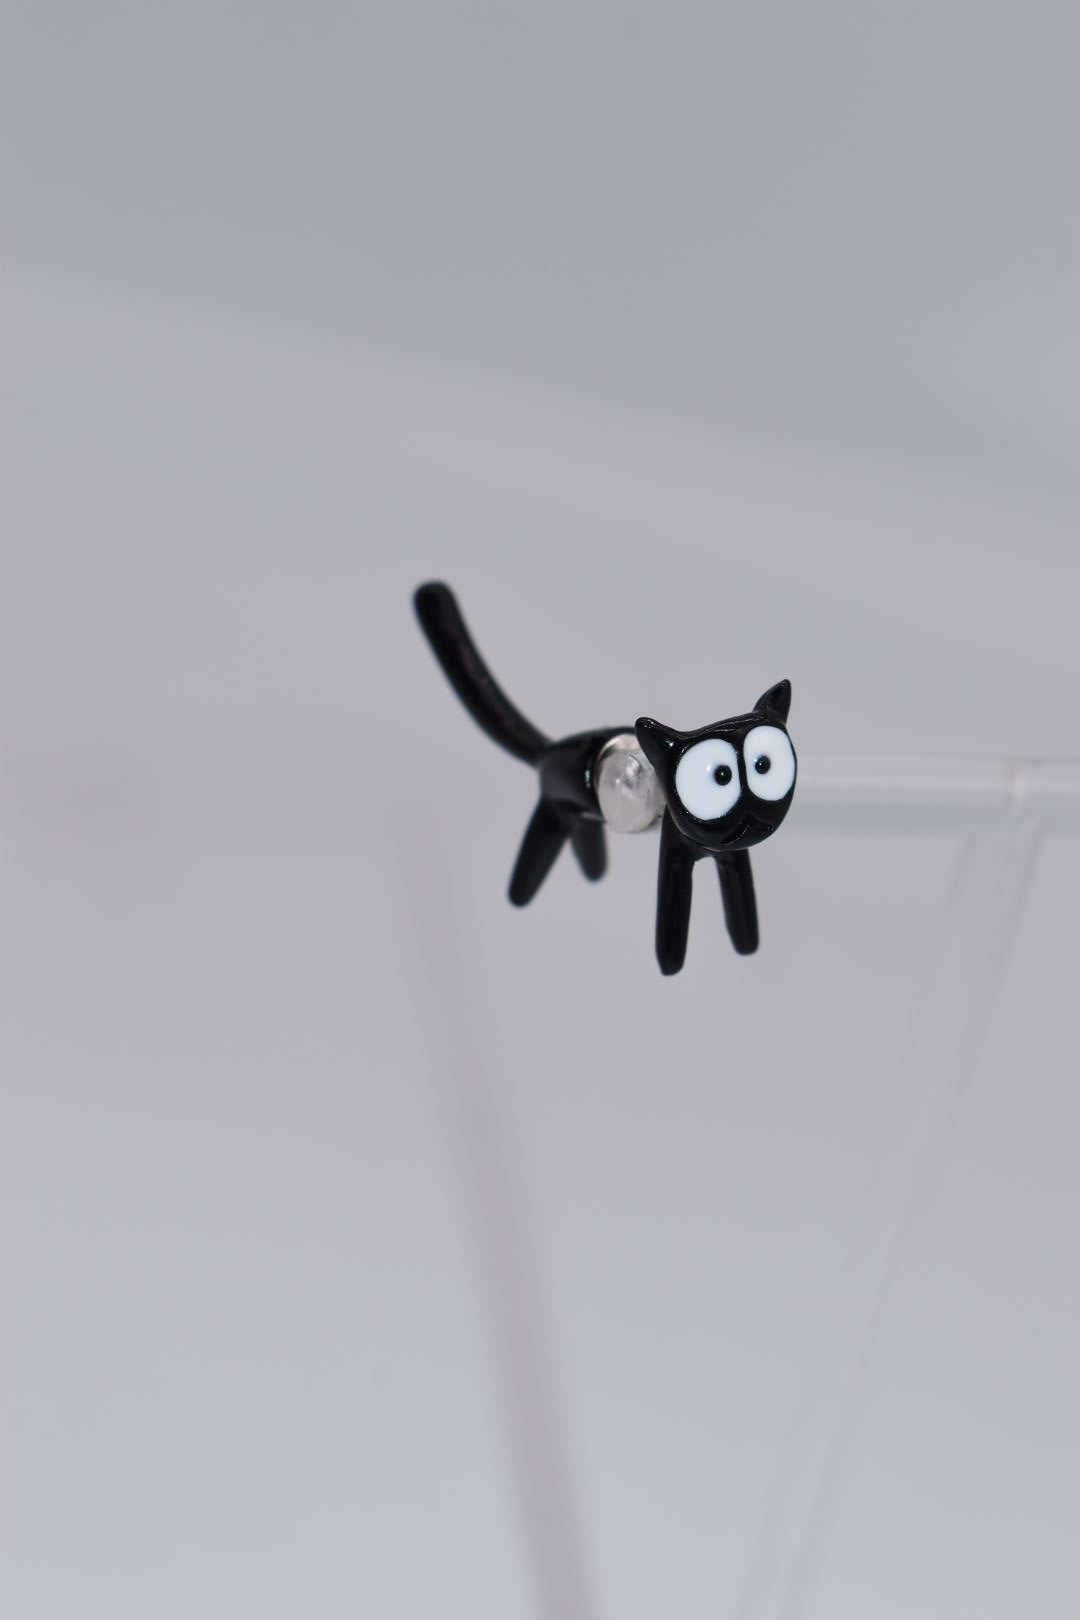 Statement Earrings: Front & Black Cat Stud Earrings